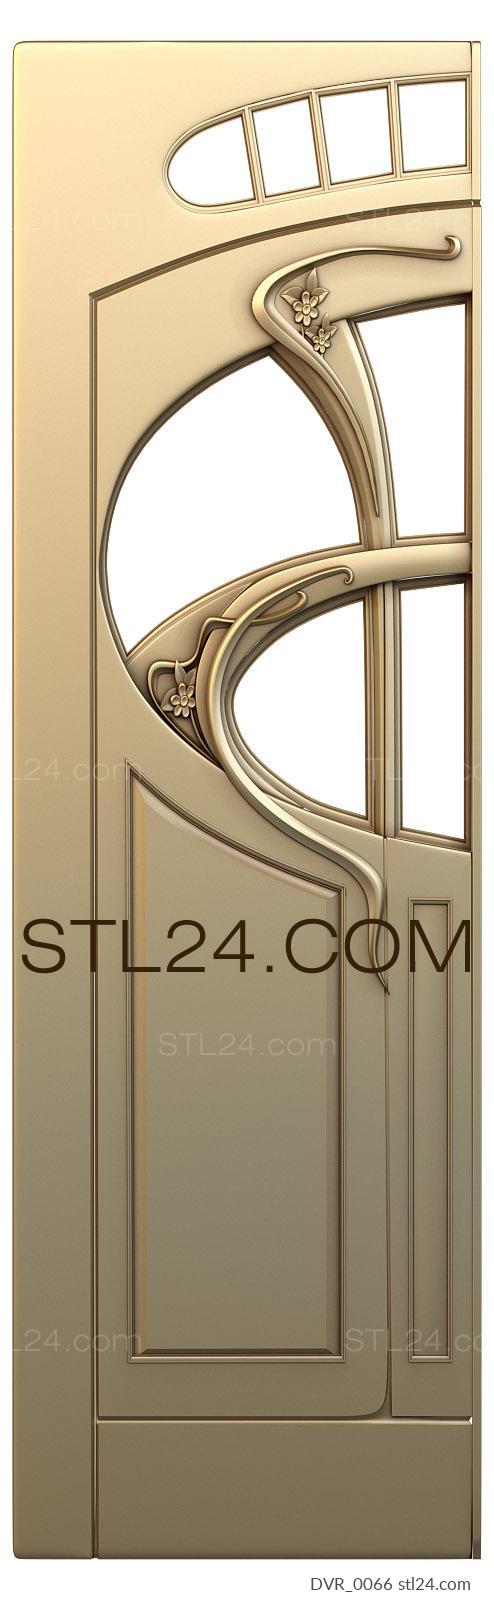 Doors (DVR_0066) 3D models for cnc